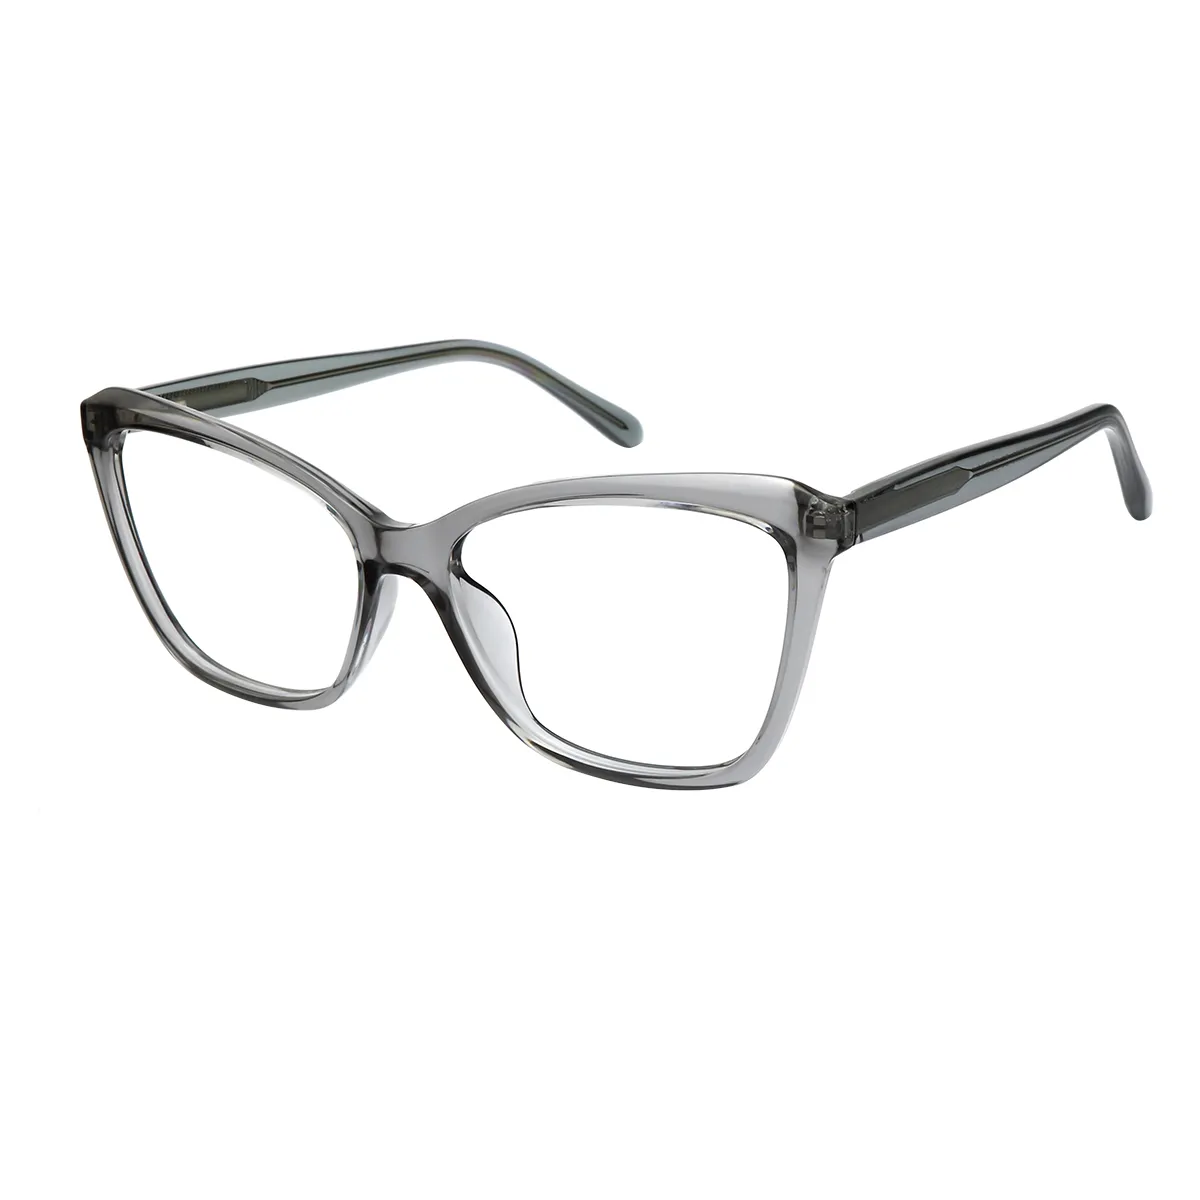 Dinah - Cat-eye Gray-Transparent Glasses for Women